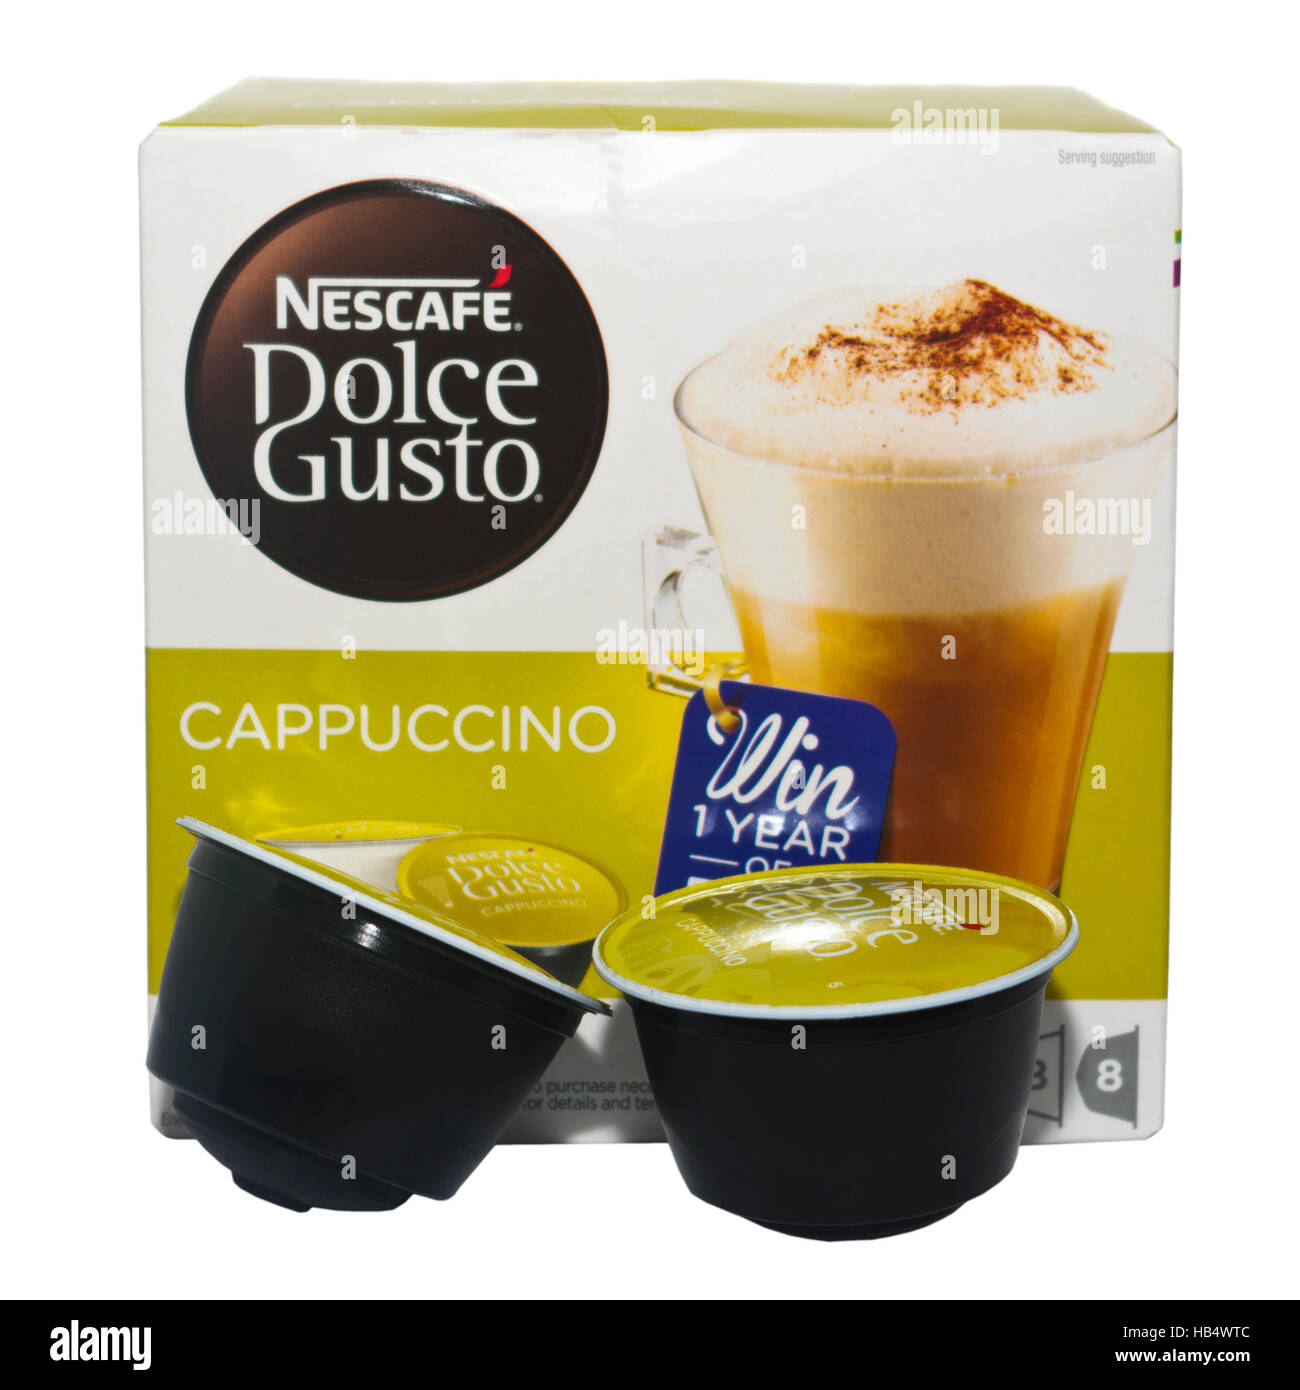 Capsulas Nescafé Dolce Gusto Cappuccino 3 Cajas